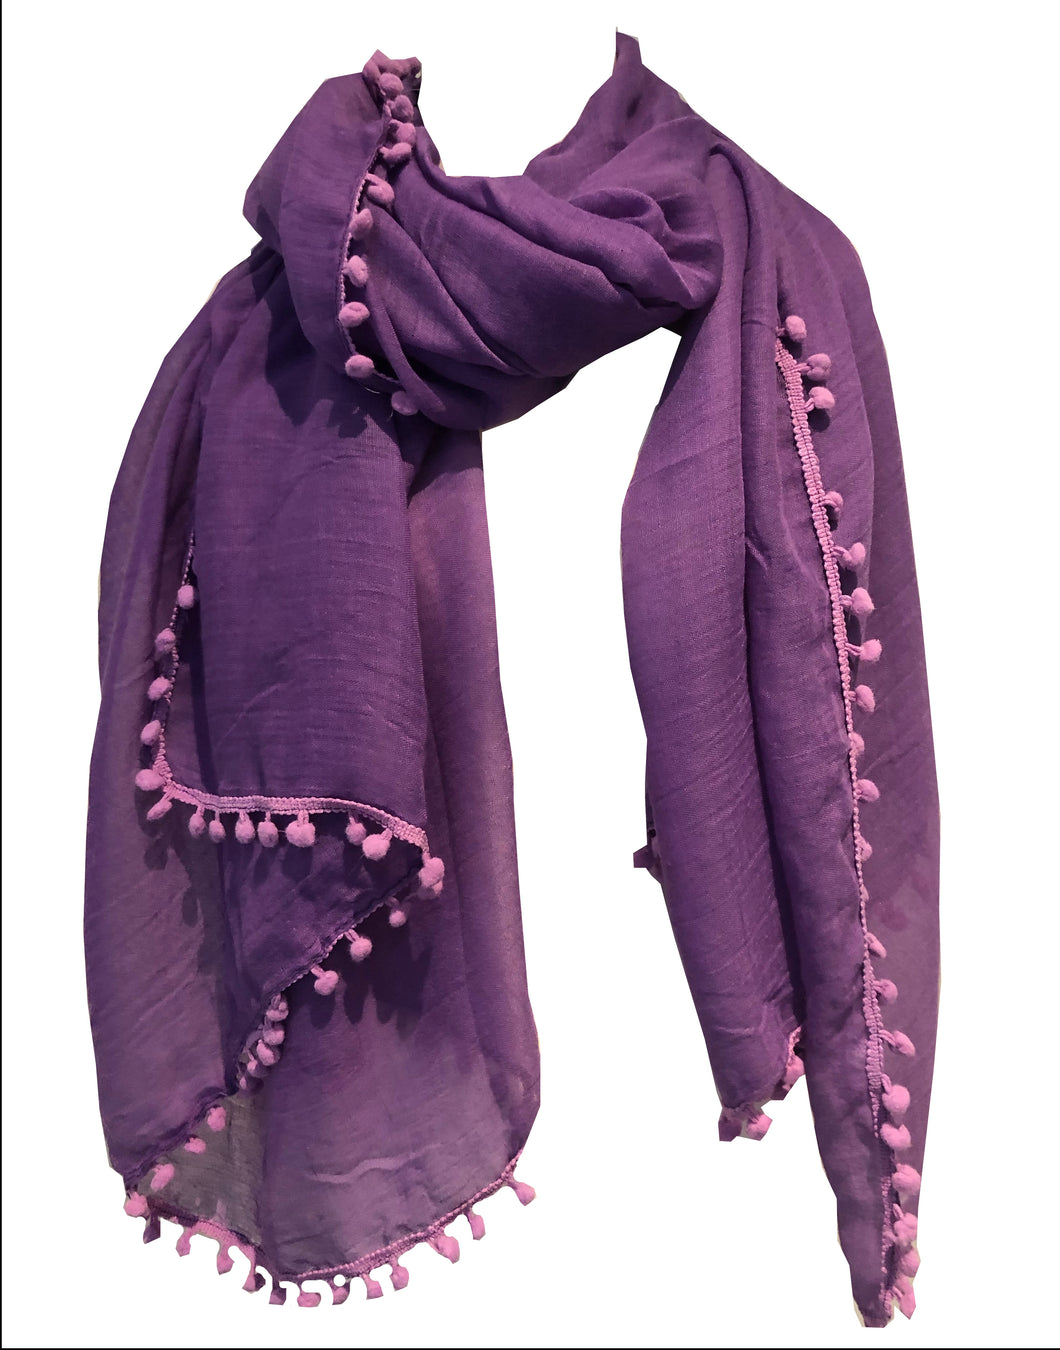 Light purple plain scarf/wrap with bobbles